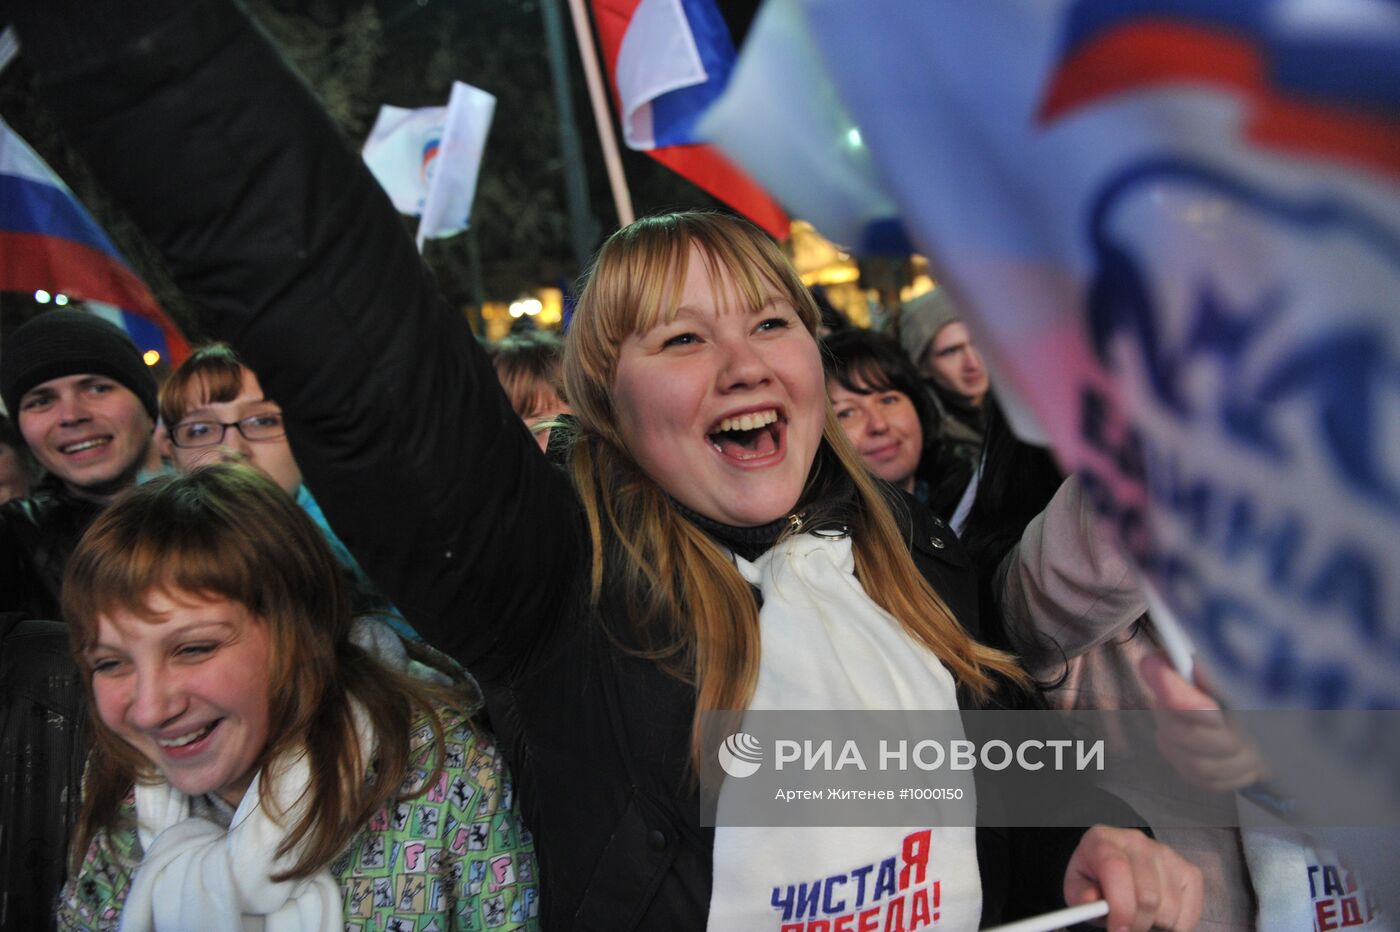 Митинг сторонников ЕР "Чистая победа" проходит в Москве